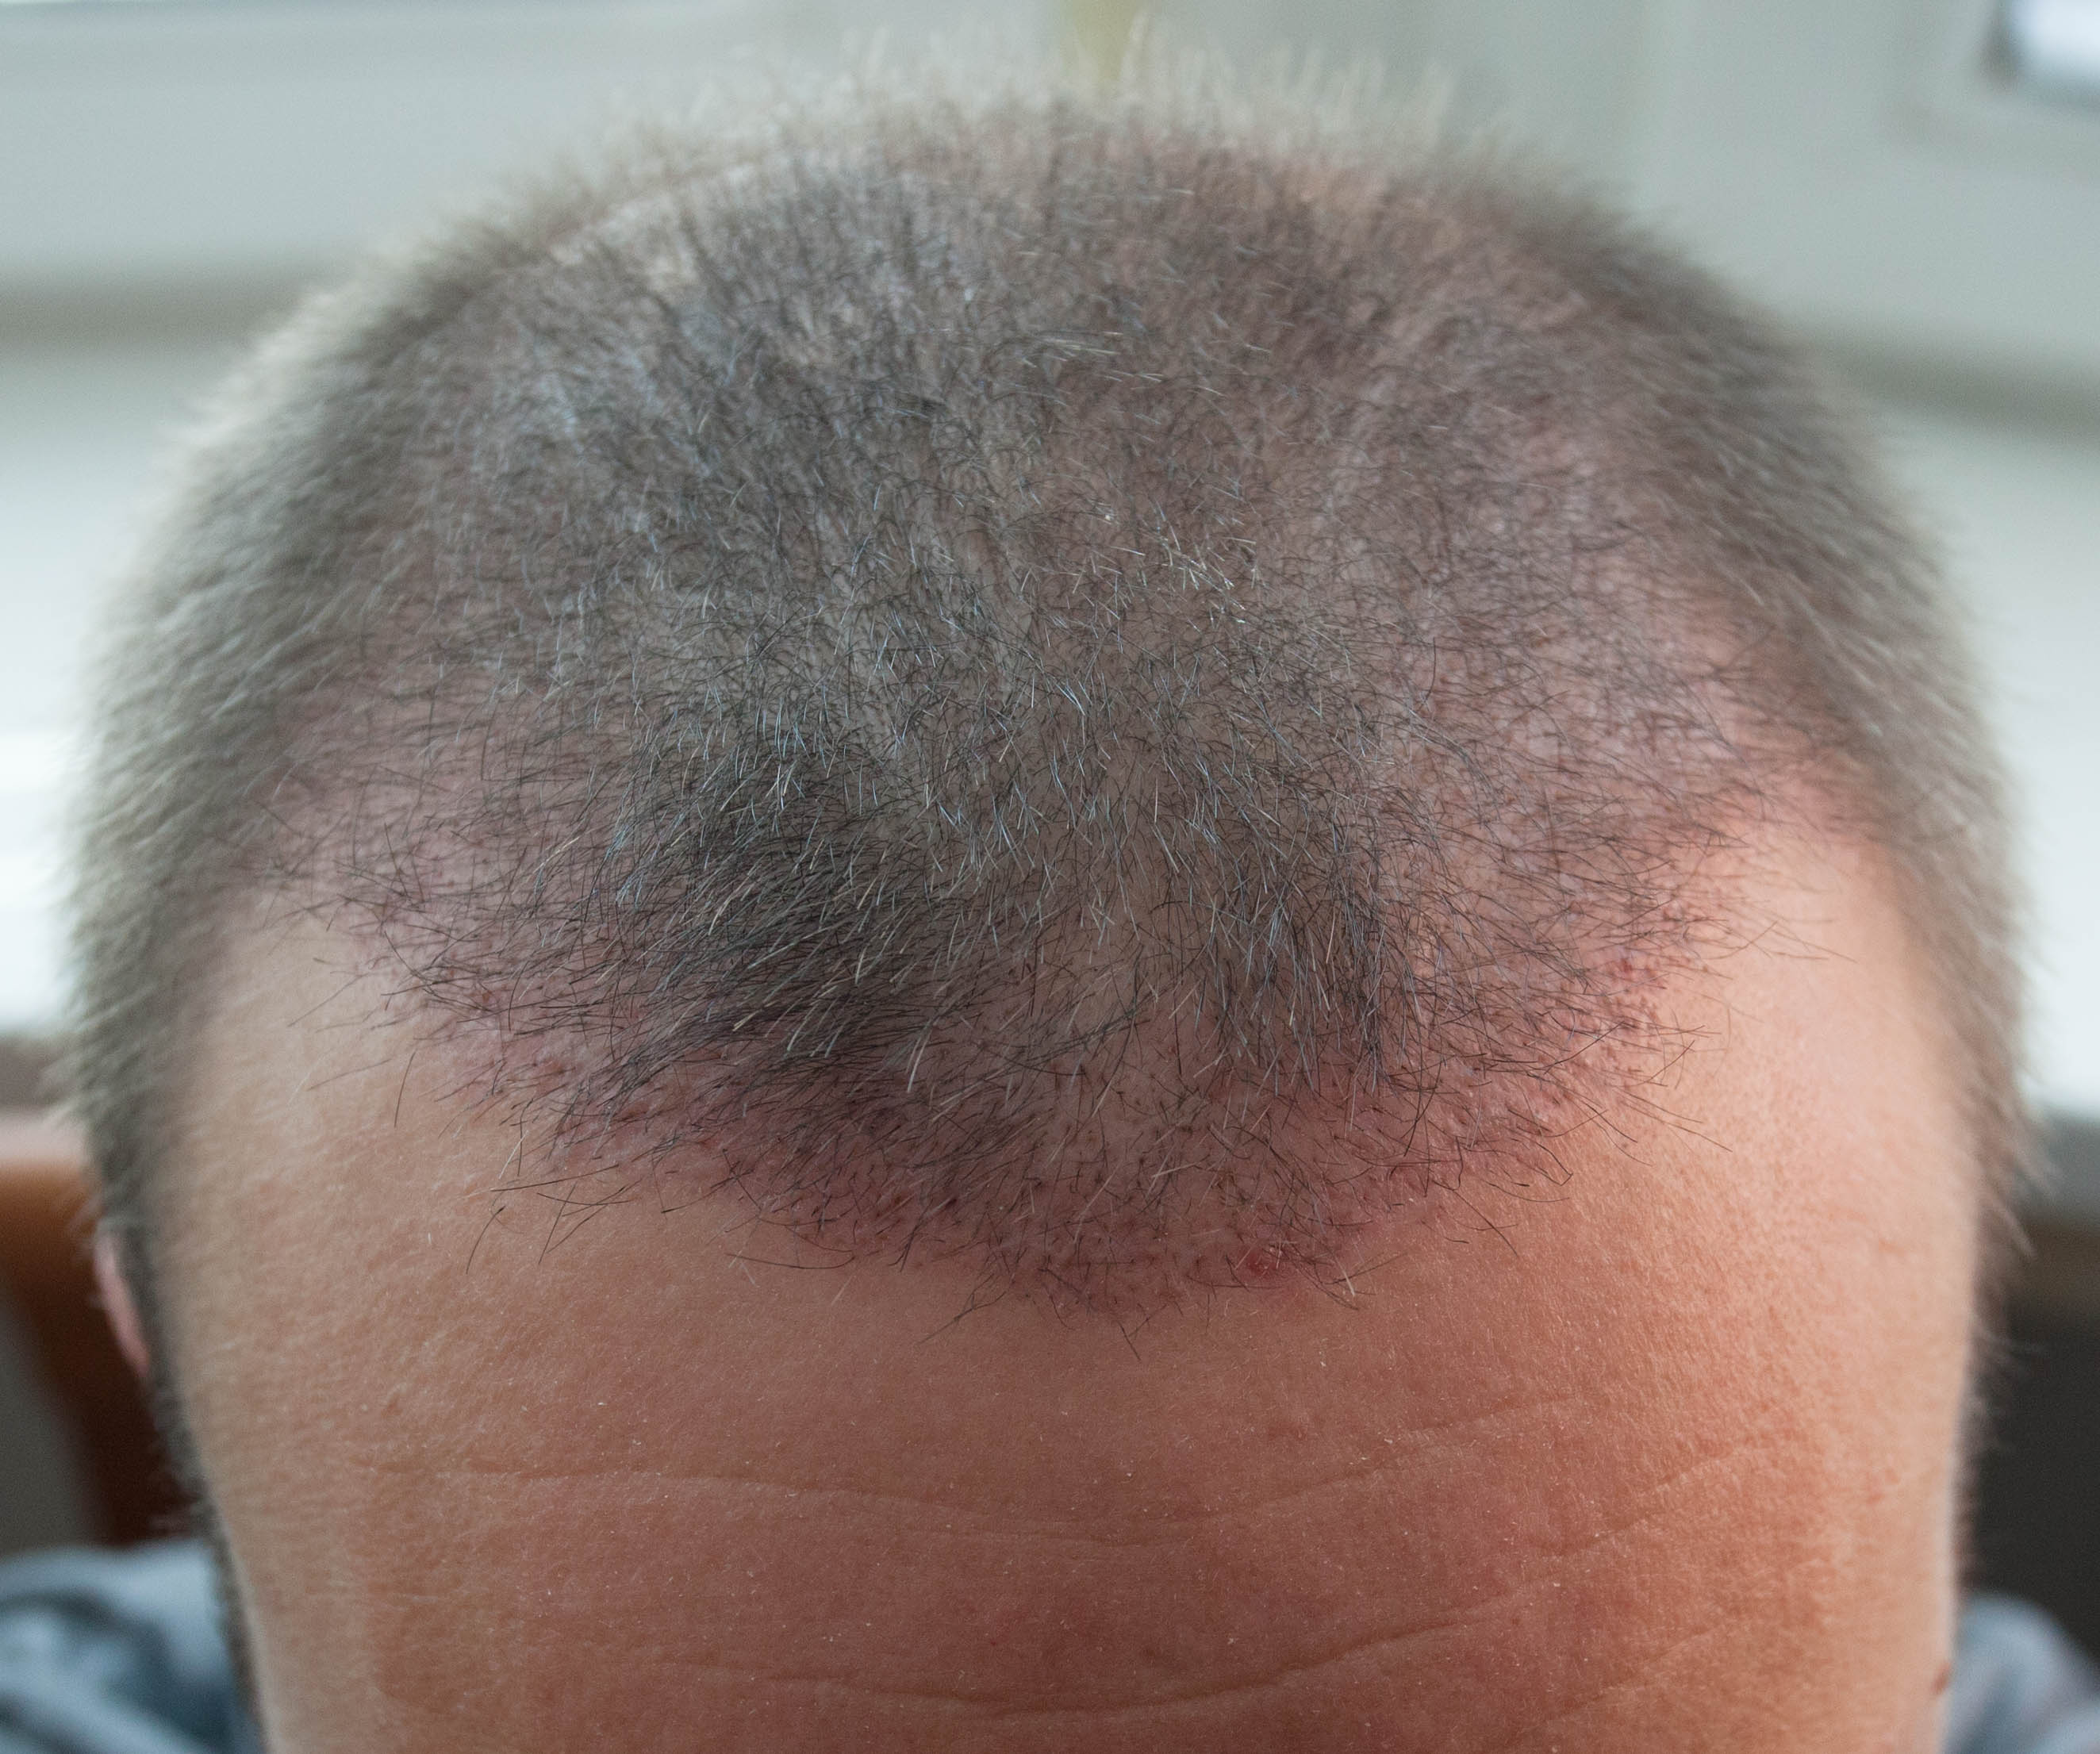 Пересадка волос фото по месяцам